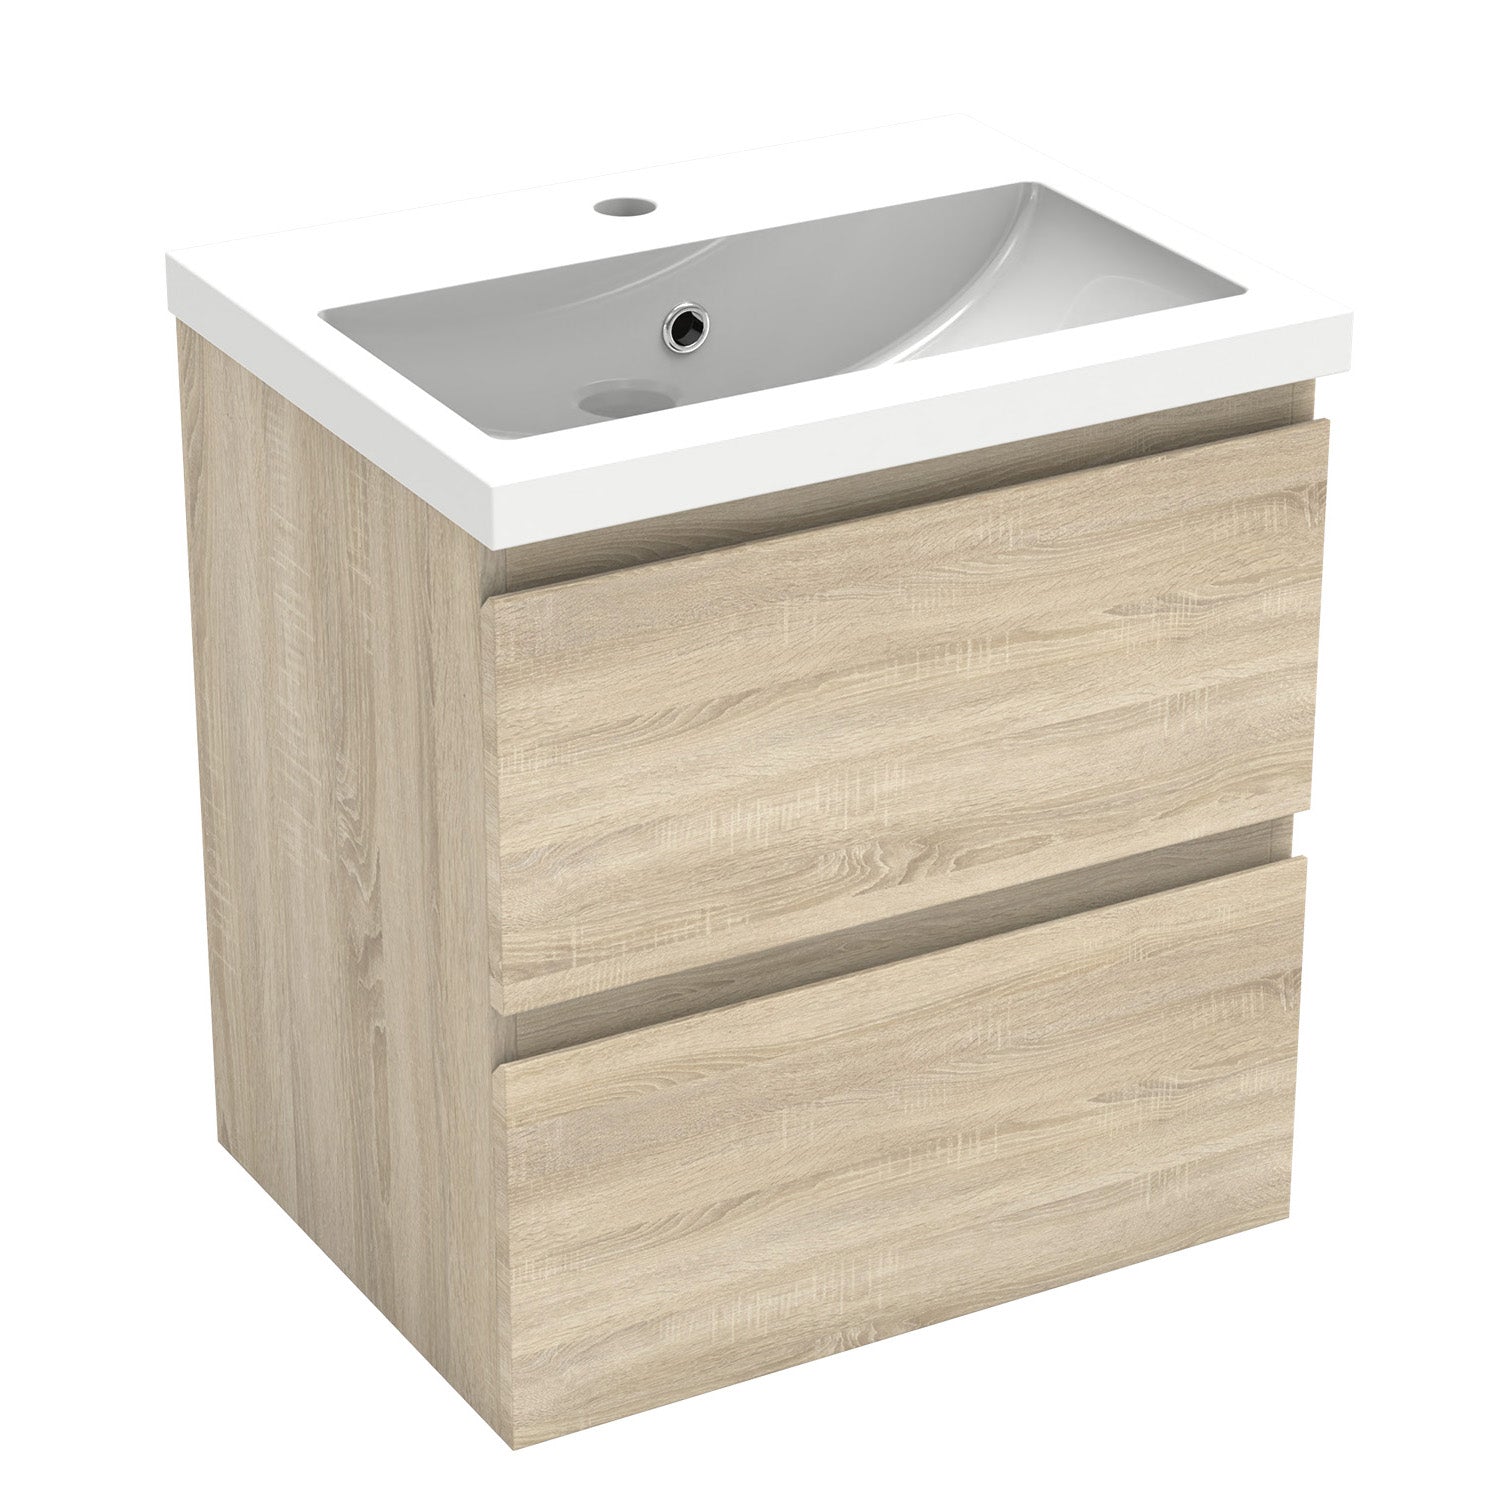 Meuble de salle de bain, Meuble de rangement avec lavabo, Meuble sous vasque suspendu, Blanc/Anthracite/Bois clair 50cm -Livraison gratuite